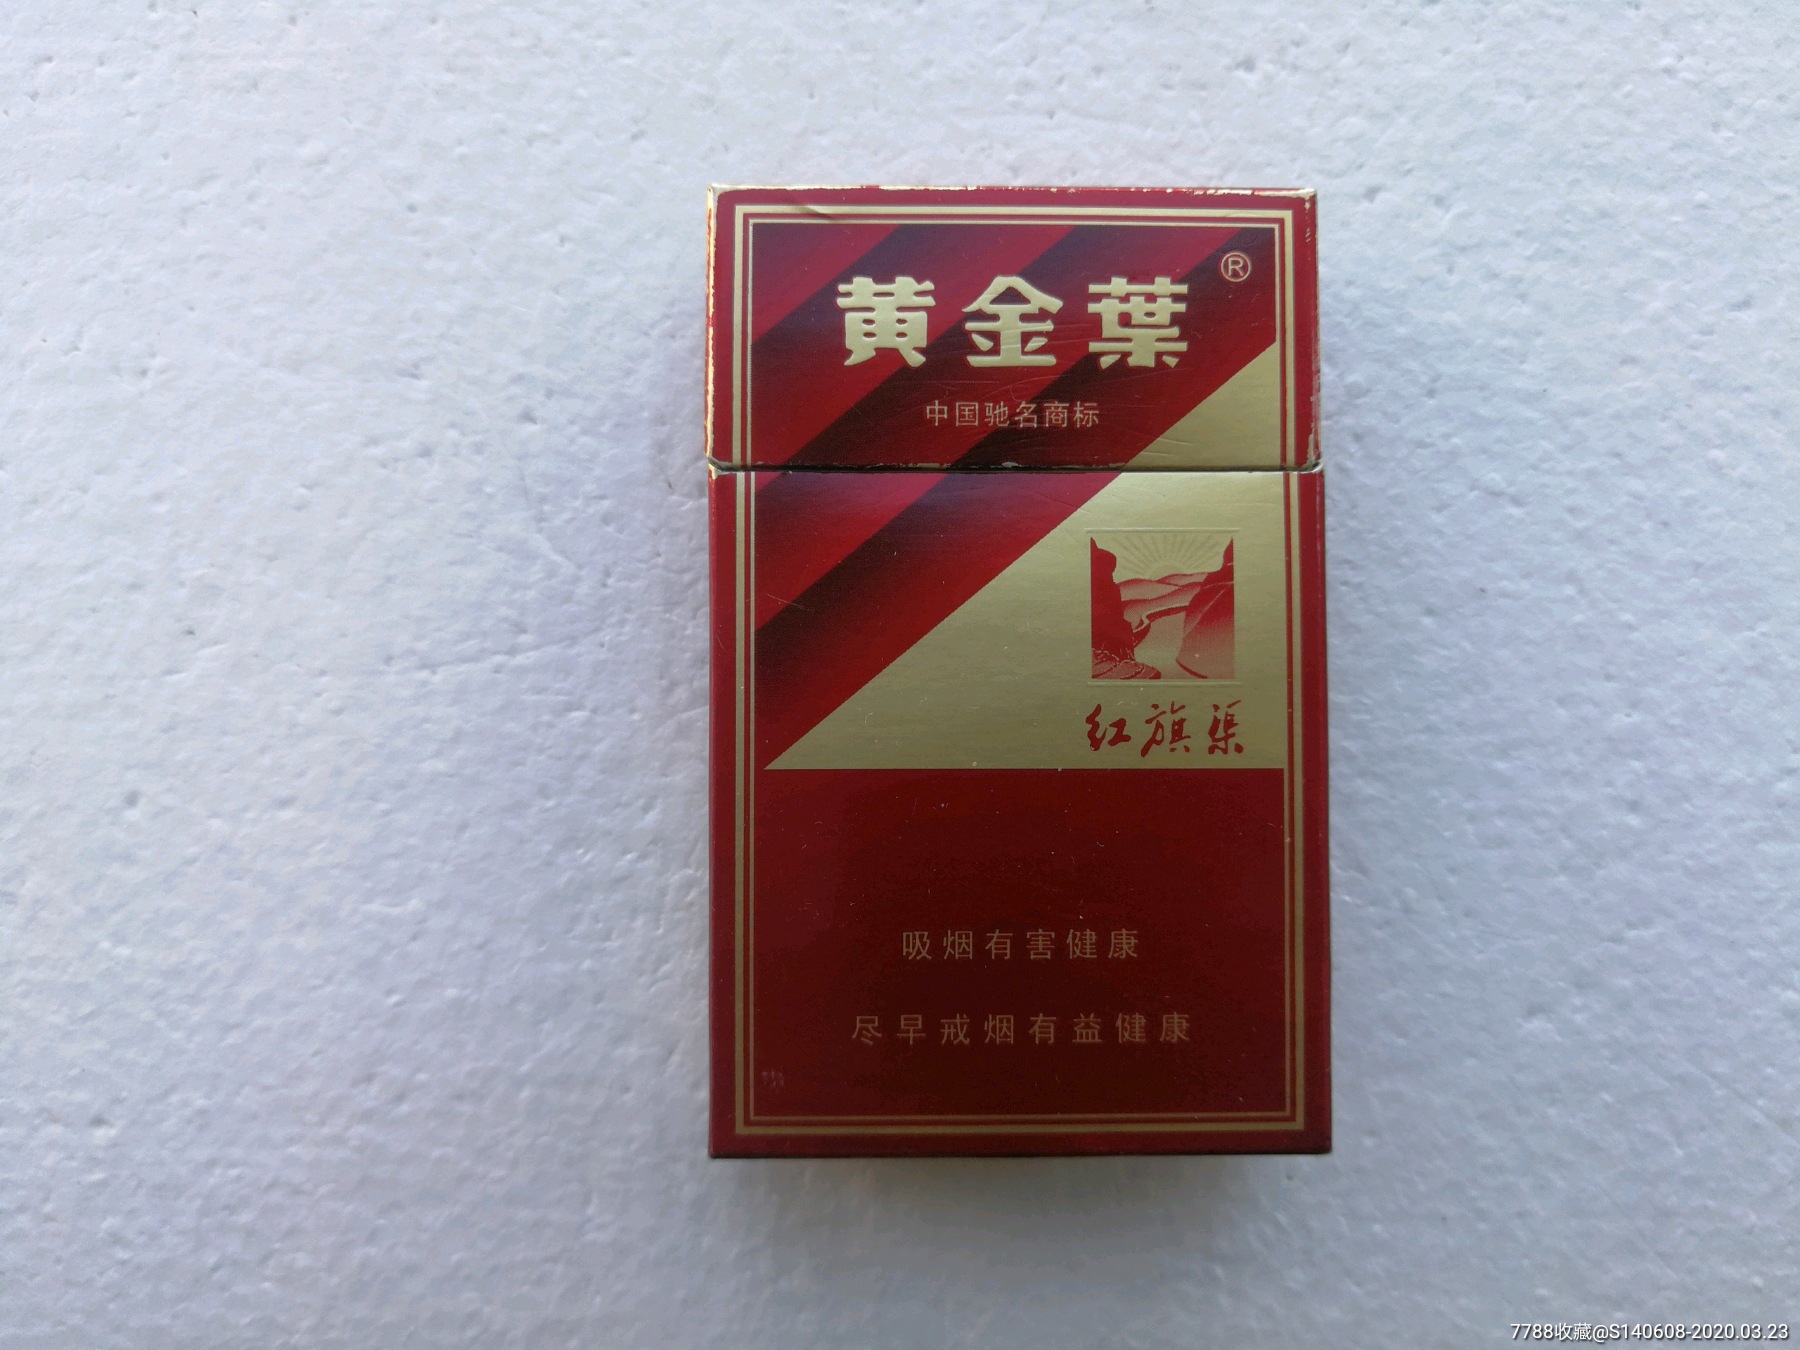 红旗渠雪茄香烟价格图片